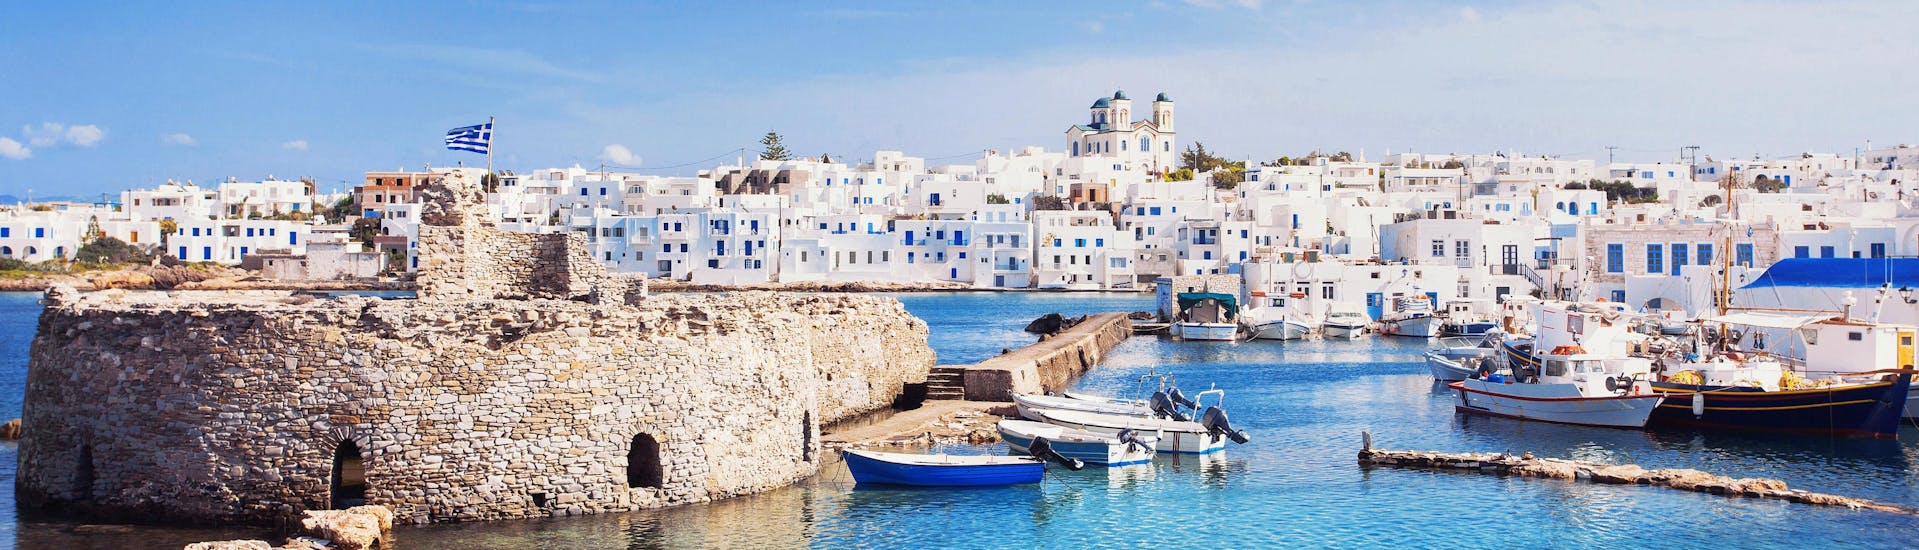 Bella vista delle caratteristiche case bianche che costeggiano le Cicladi, in Grecia, una destinazione popolare per le gite in barca.